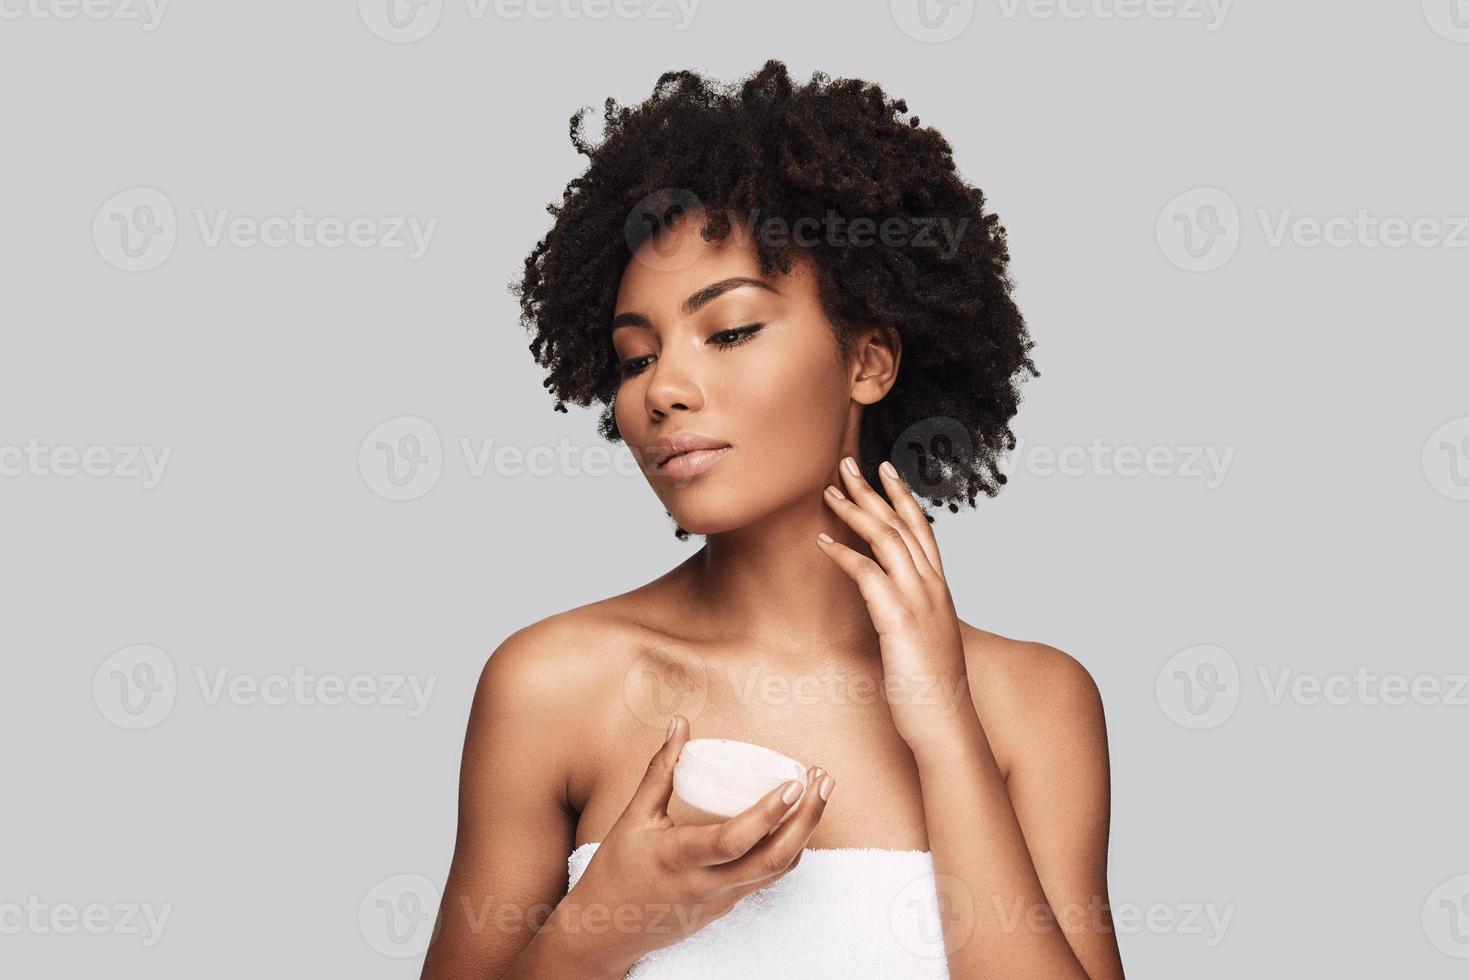 propre et frais. séduisante jeune femme africaine appliquant une crème hydratante et souriant en se tenant debout sur fond gris photo